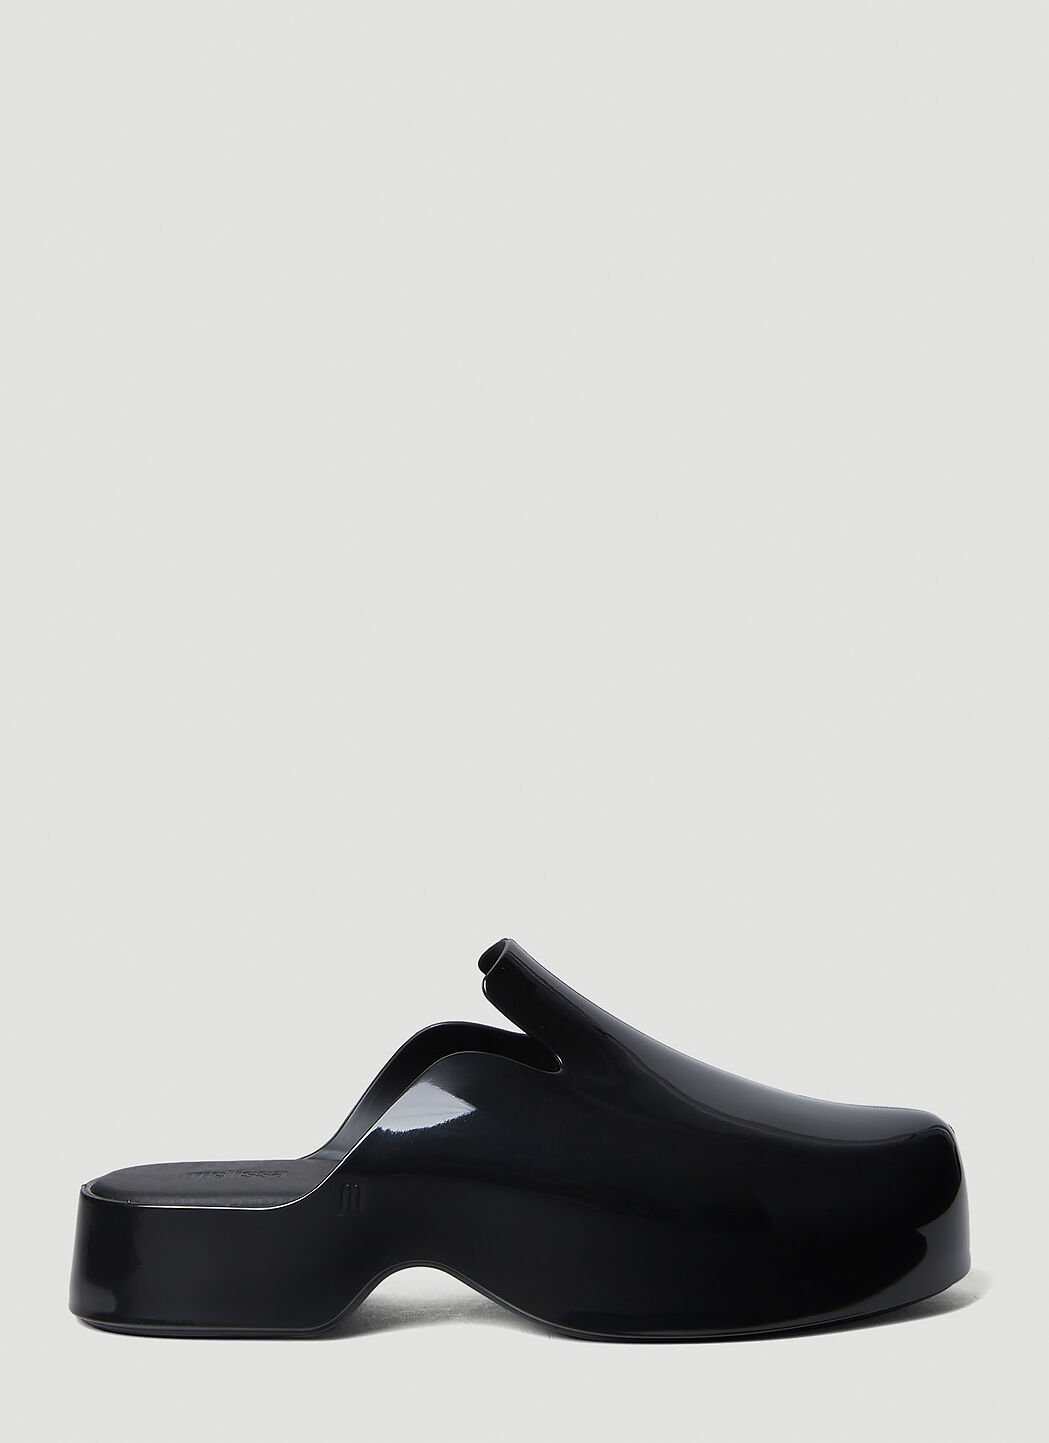 Melissa x Marc Jacobs Zoe 屐鞋 黑色 mxm0254006